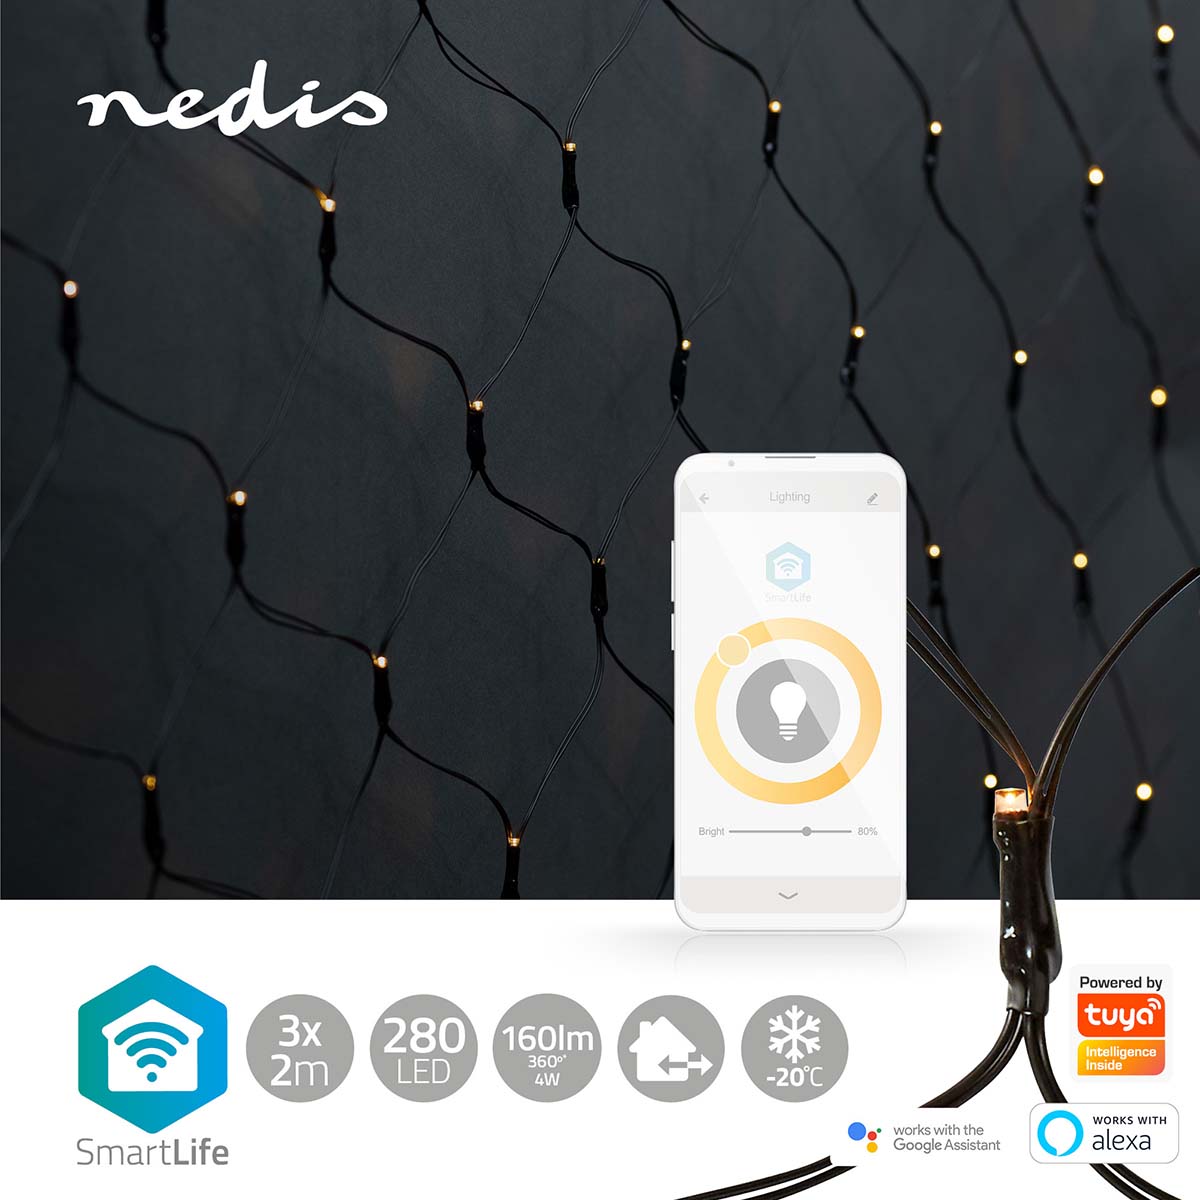 Rede de luz Nedis Wi-Fi em branco quente, 280 LEDs em 3x2m iluminação inteligente para um Natal acolhedor e personalizado.